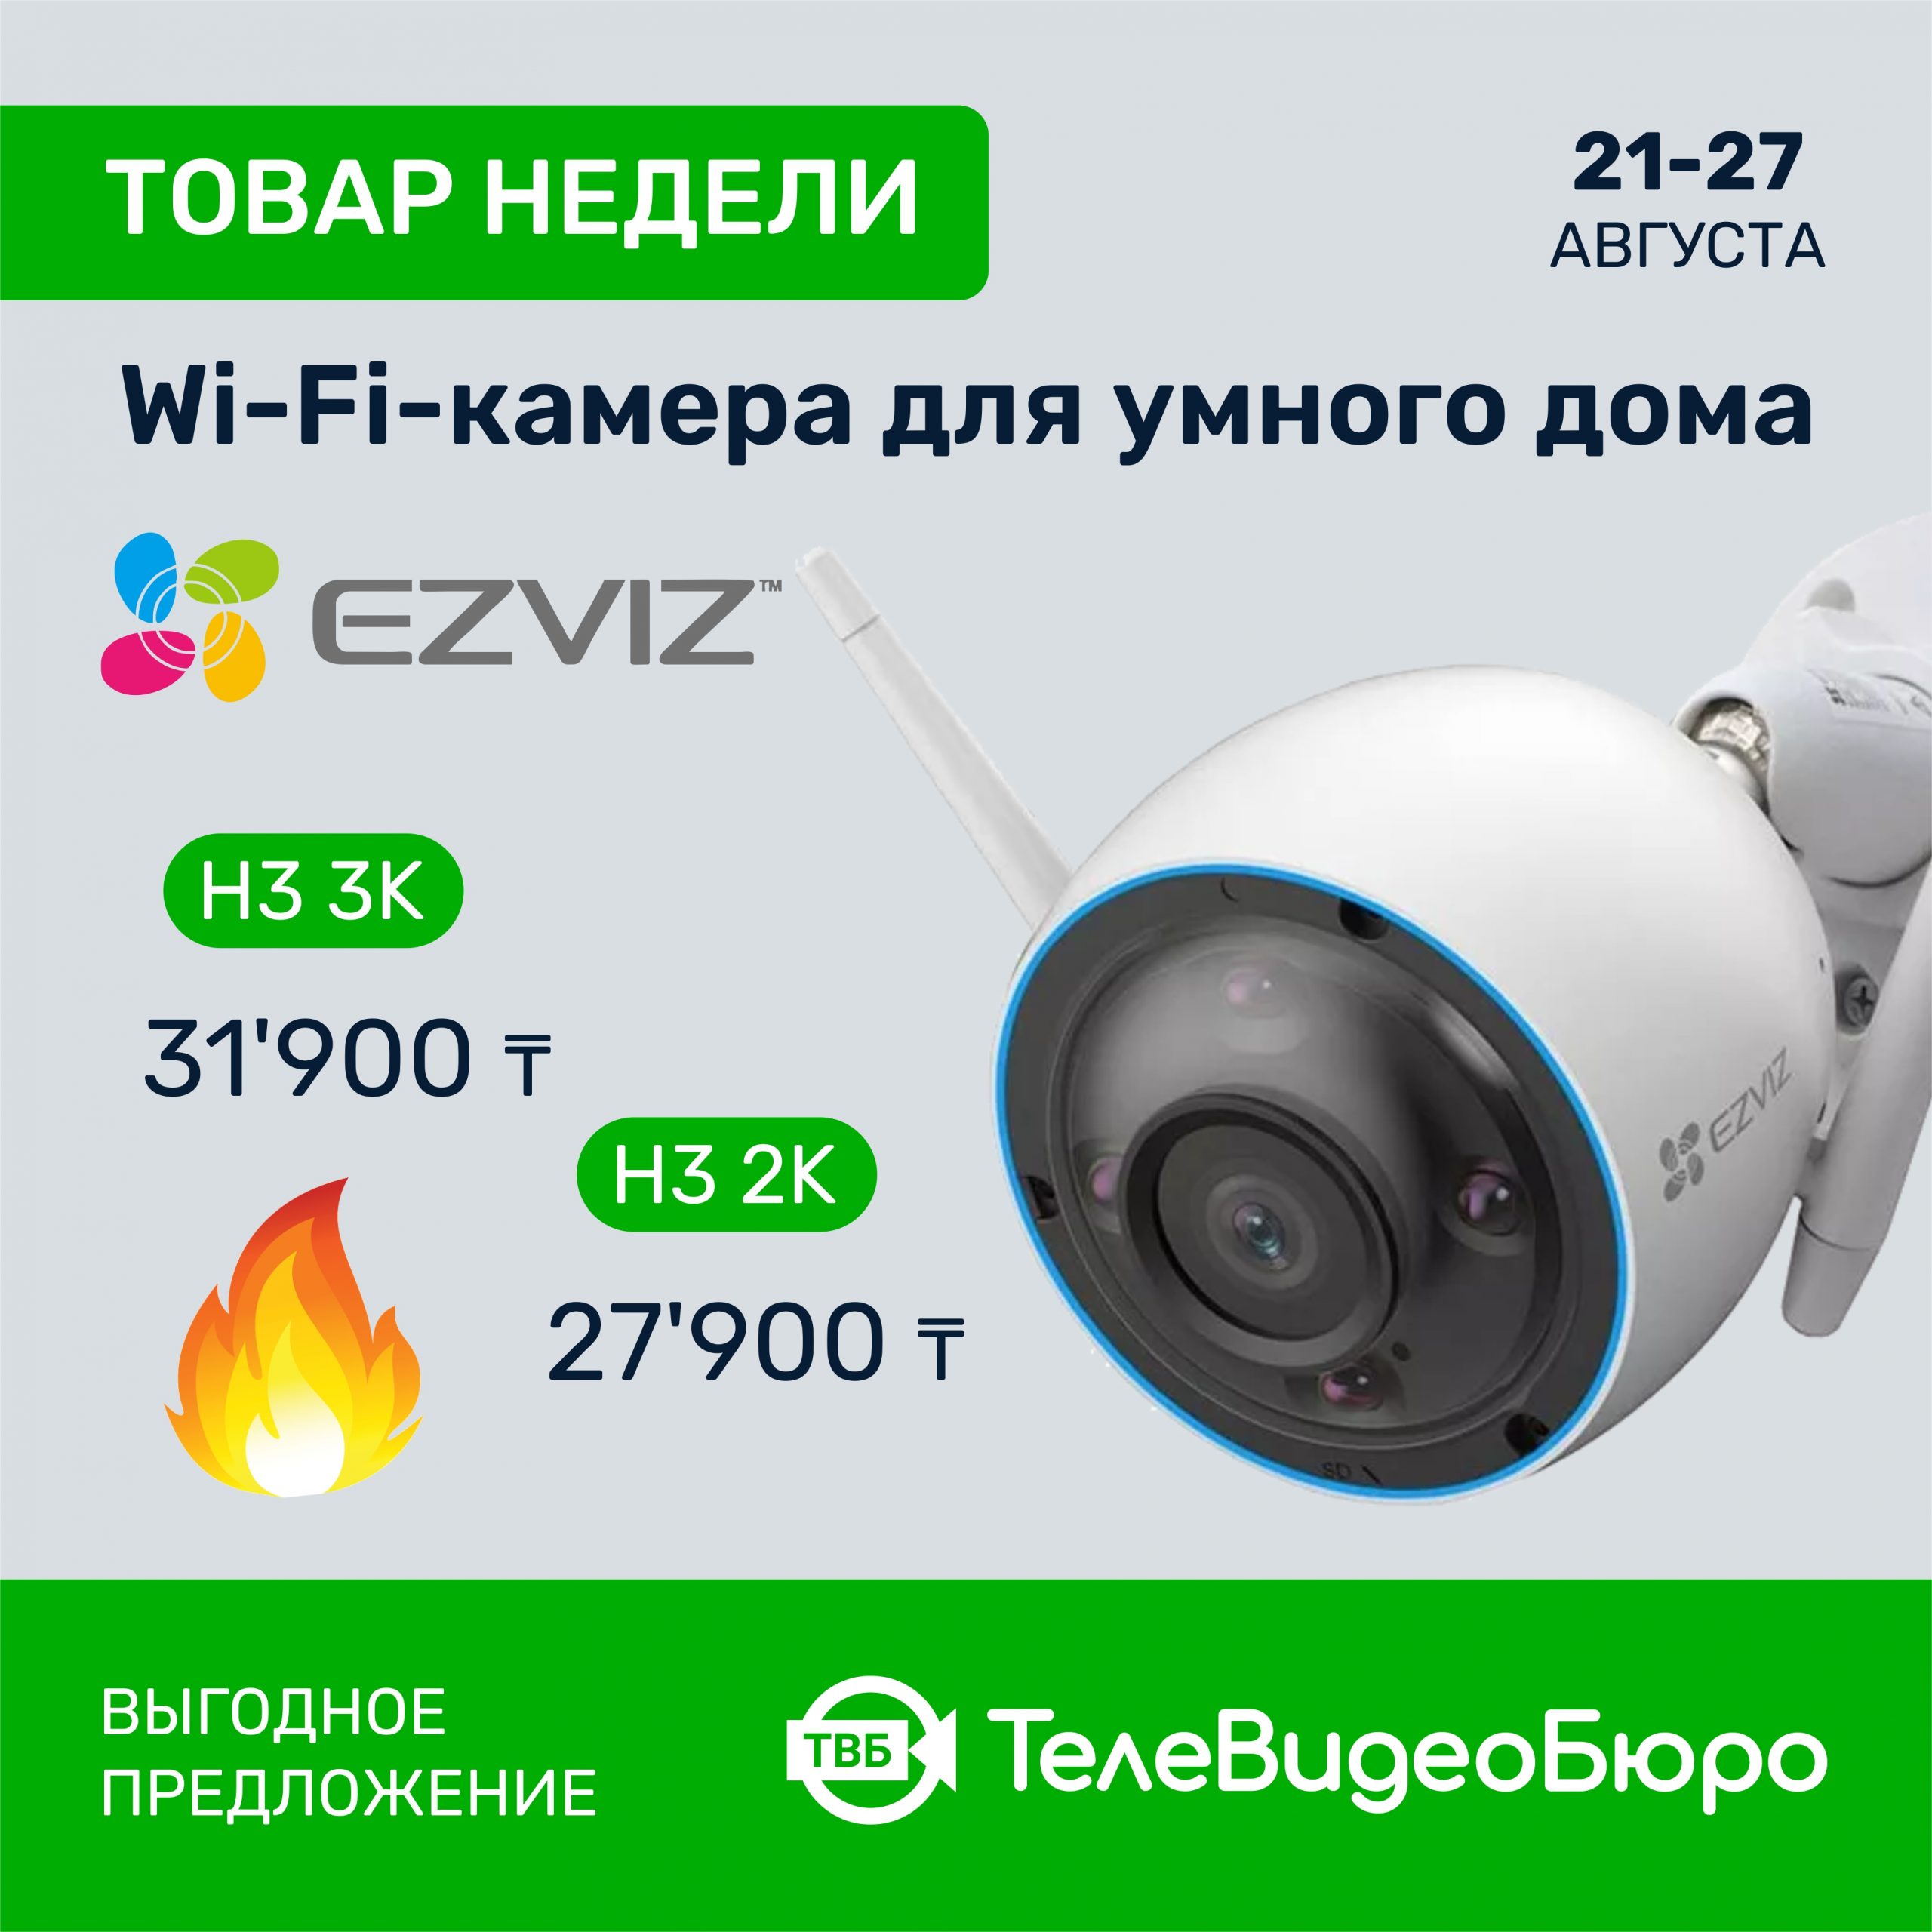 Товар Недели в Магазине Систем Безопасности “ТелеВидеоБюро” – WiFi<br>камеры Ezviz H3 3K и Ezviz H3 2K!